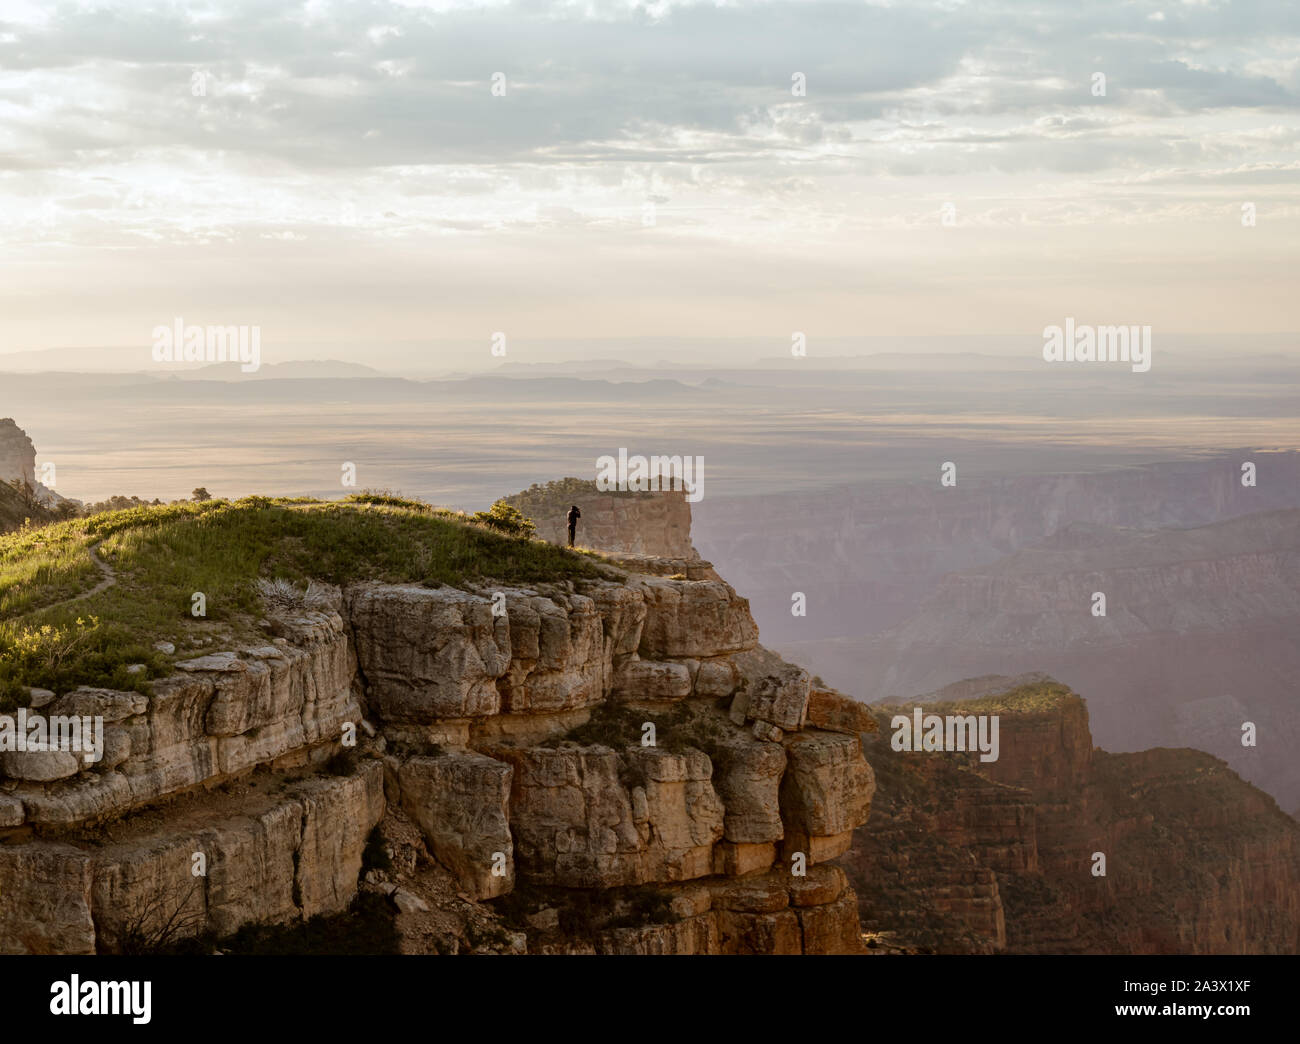 Un fotógrafo toma una imagen de Grand Canyon North Rim de la montura Mountain tienen vistas al Bosque Nacional Kaibab. Foto de stock